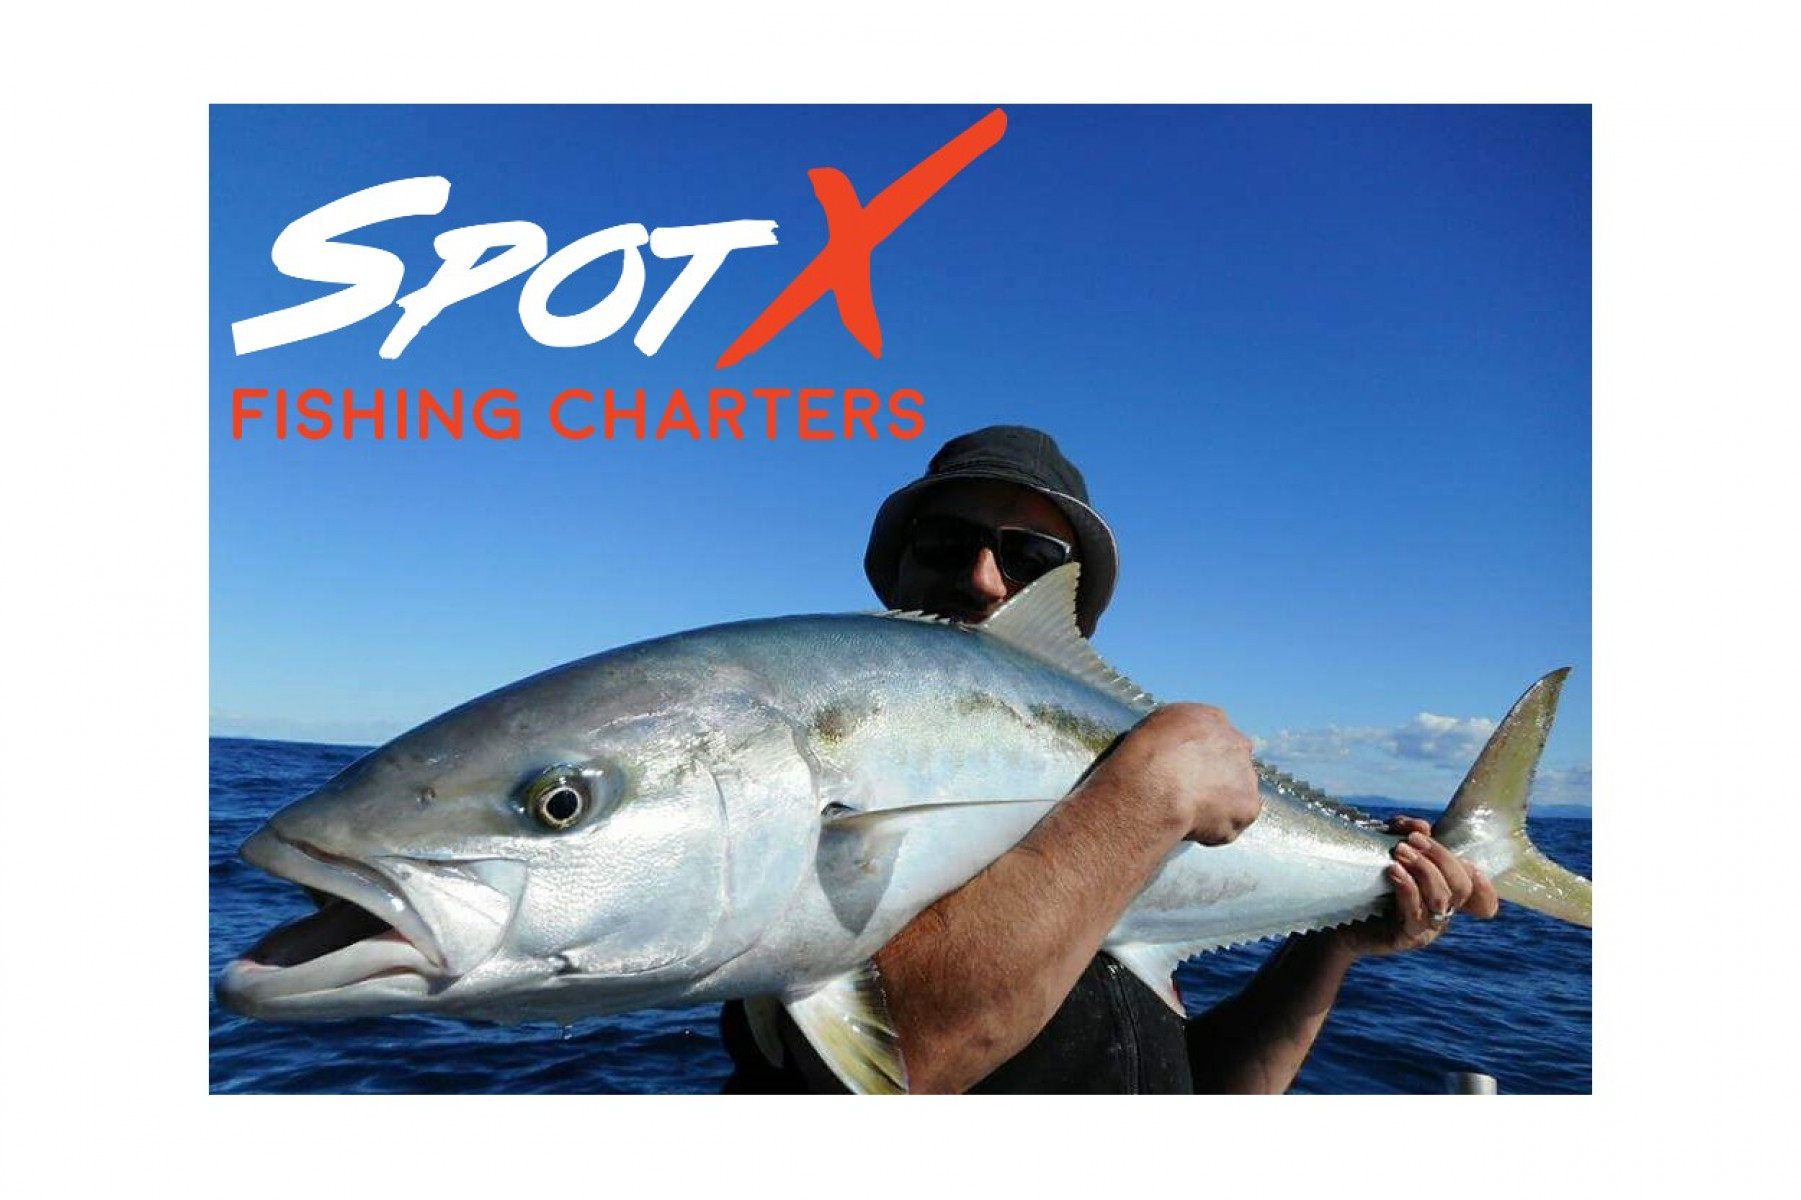 SpotX Fishing Charters - shared kingfish trips